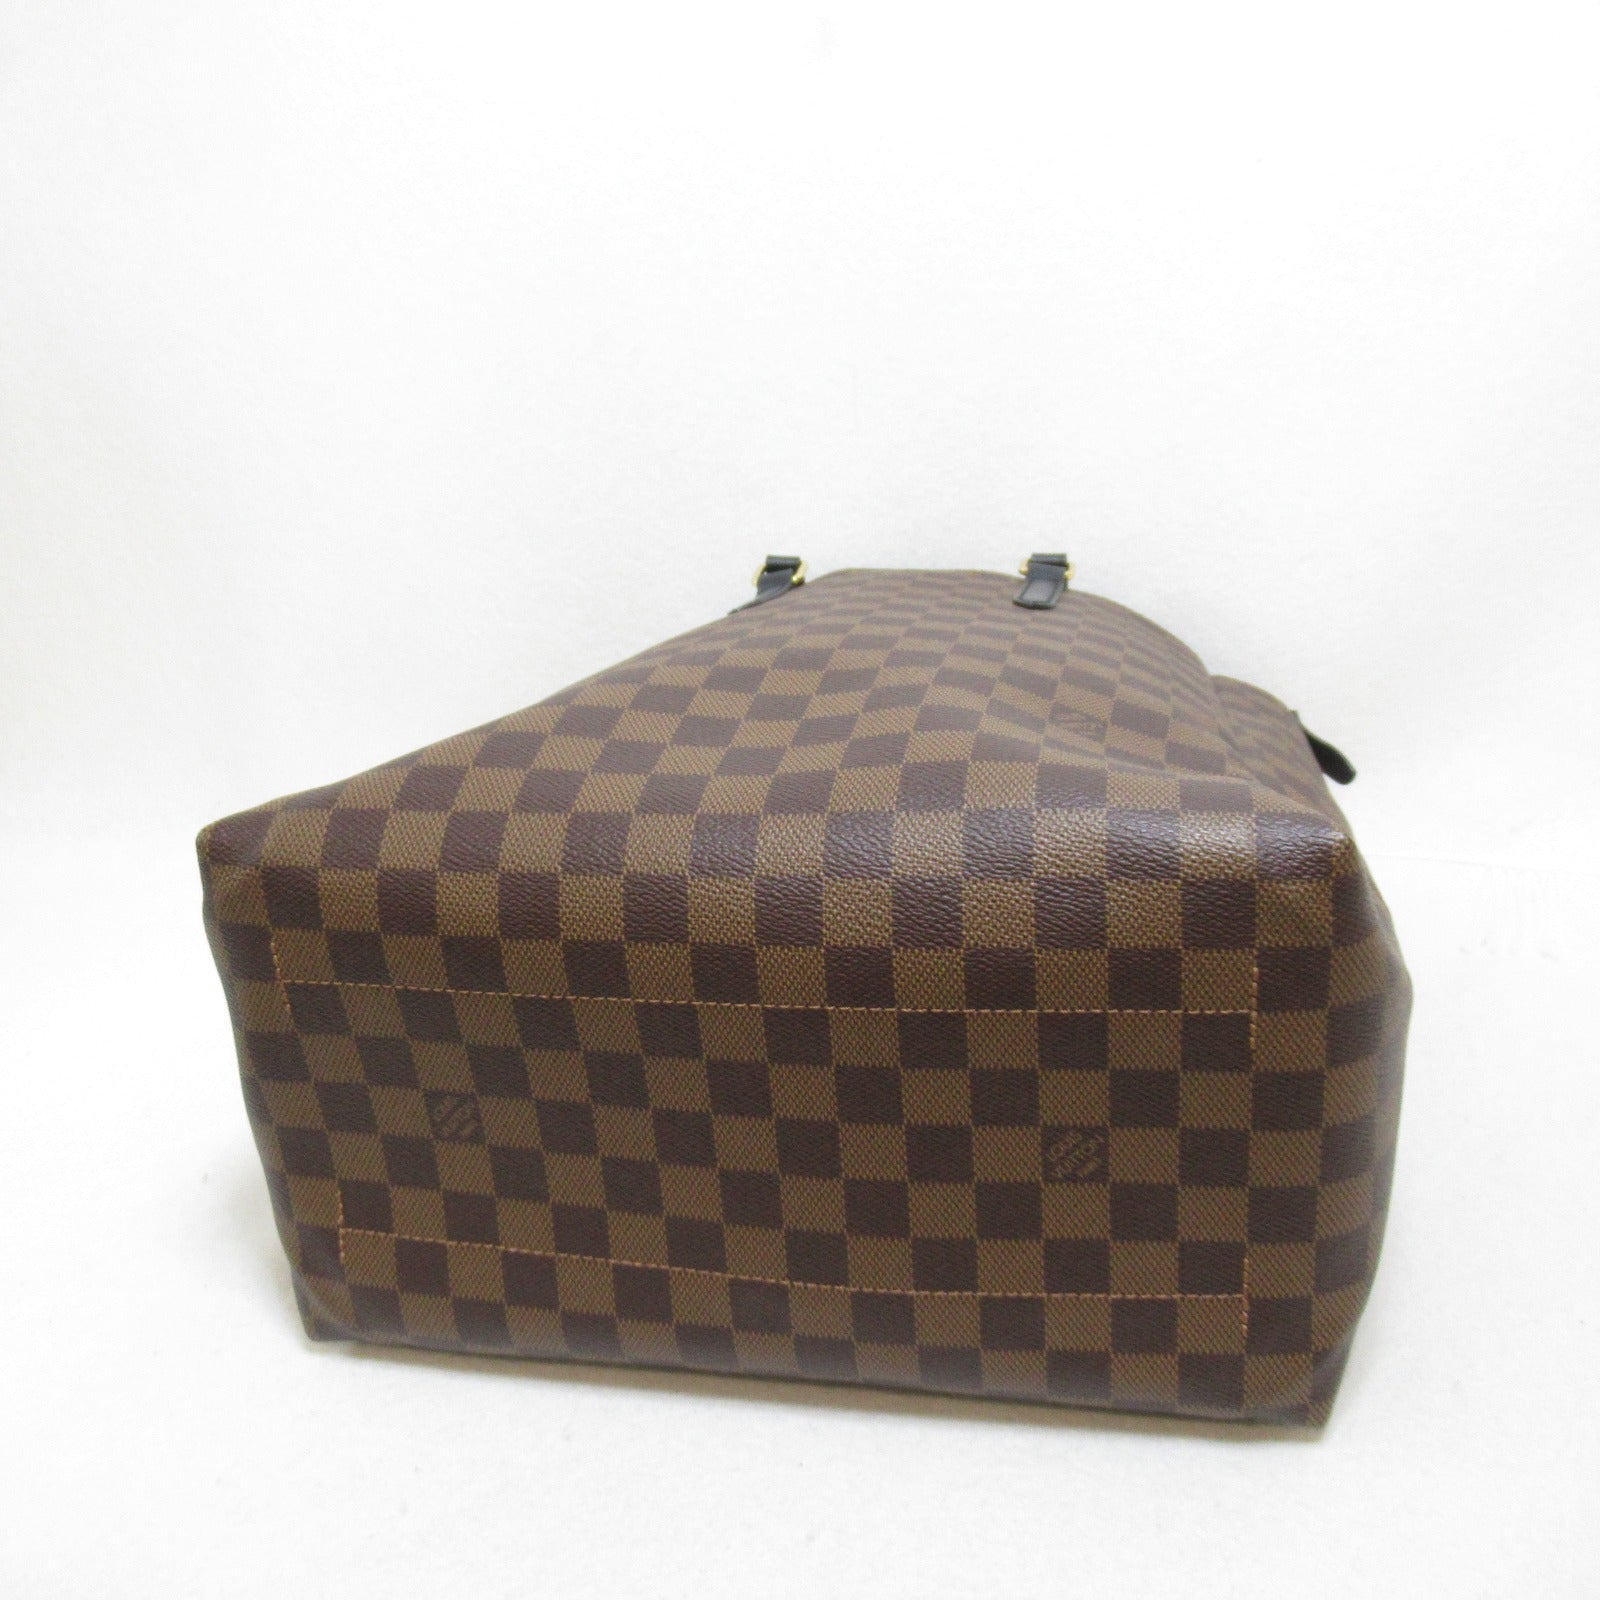 Louis Vuitton Louis Vuitton Belmont NV MM 2w Shoulder Bag 2w Shoulder Bag PVC Coated Canvas Damier  Brown N60294